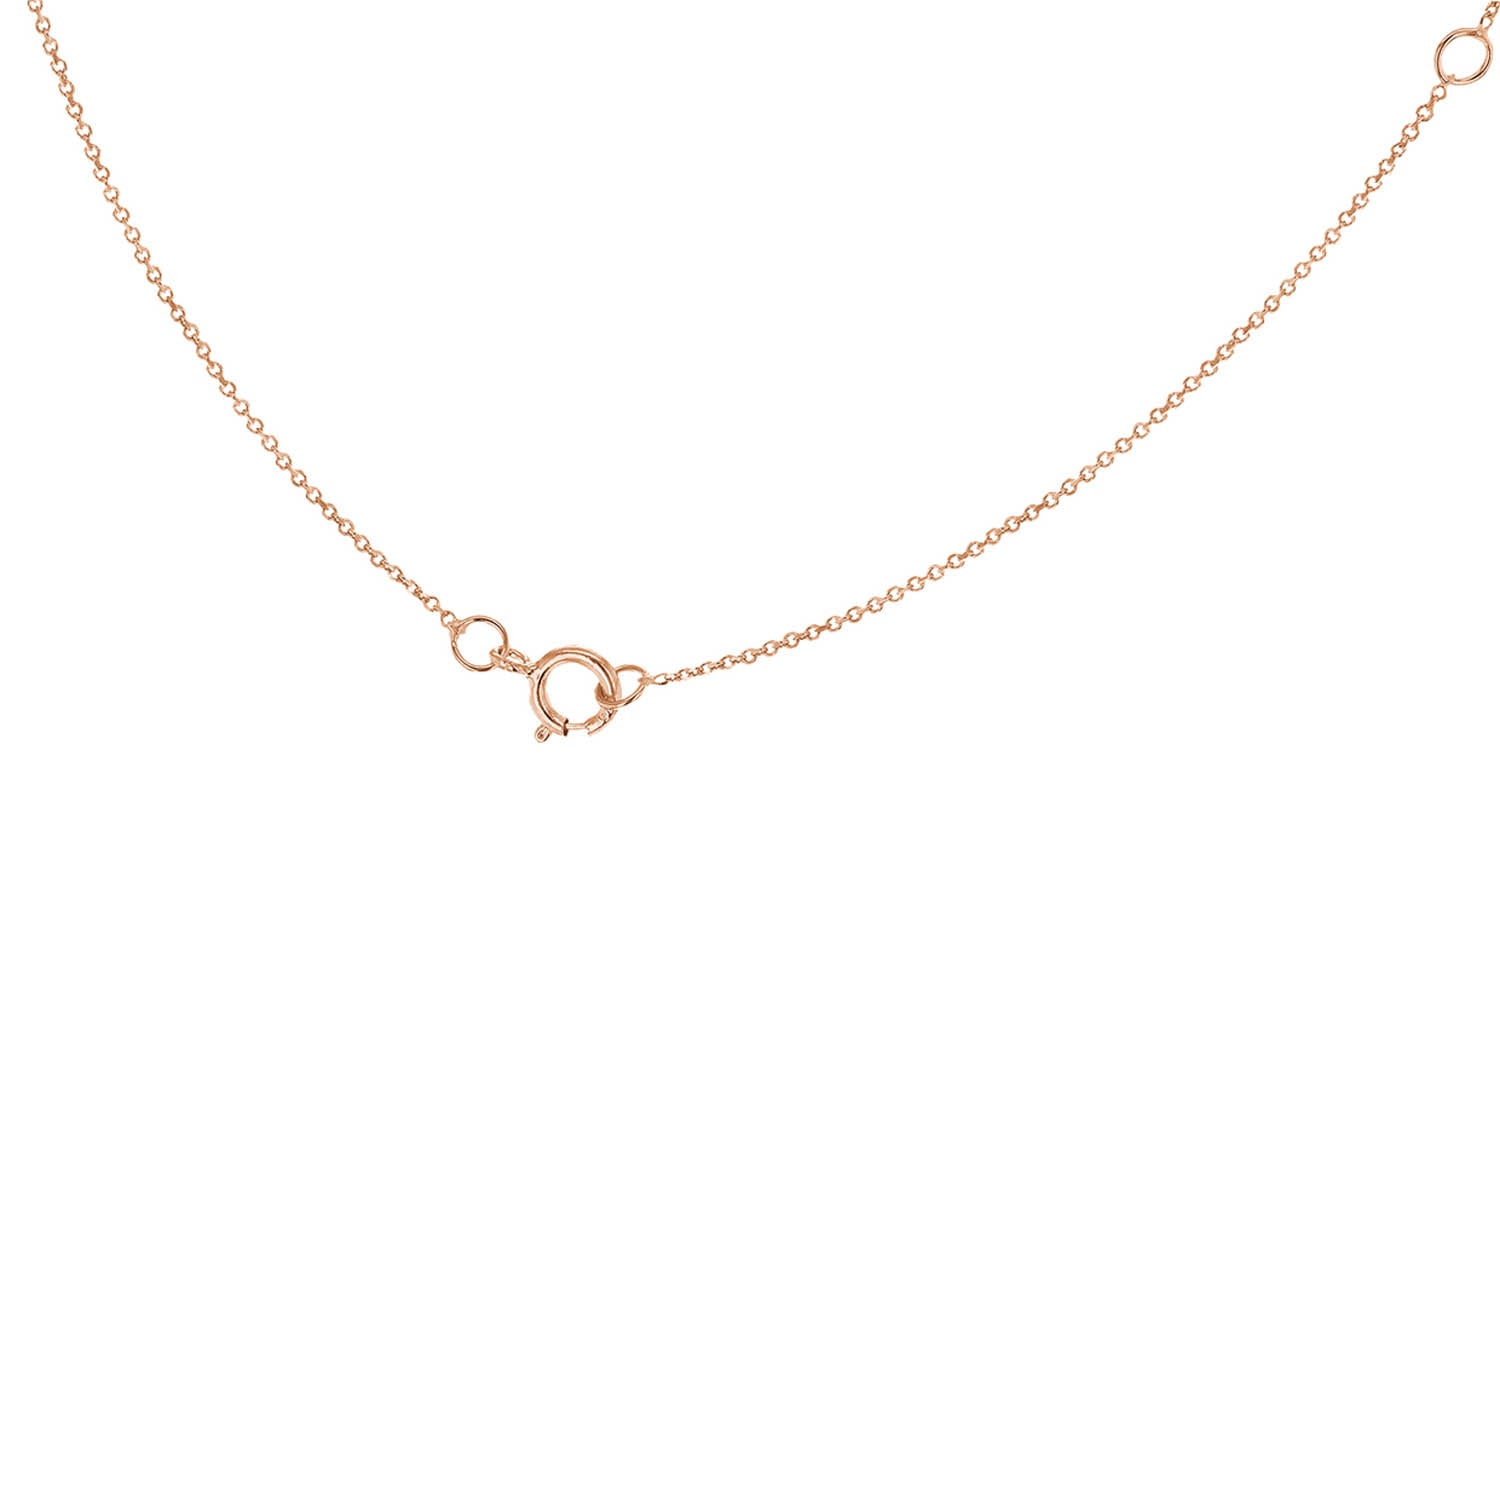 9ct Rose Gold 'U' Initial Adjustable Letter Necklace 38/43cm